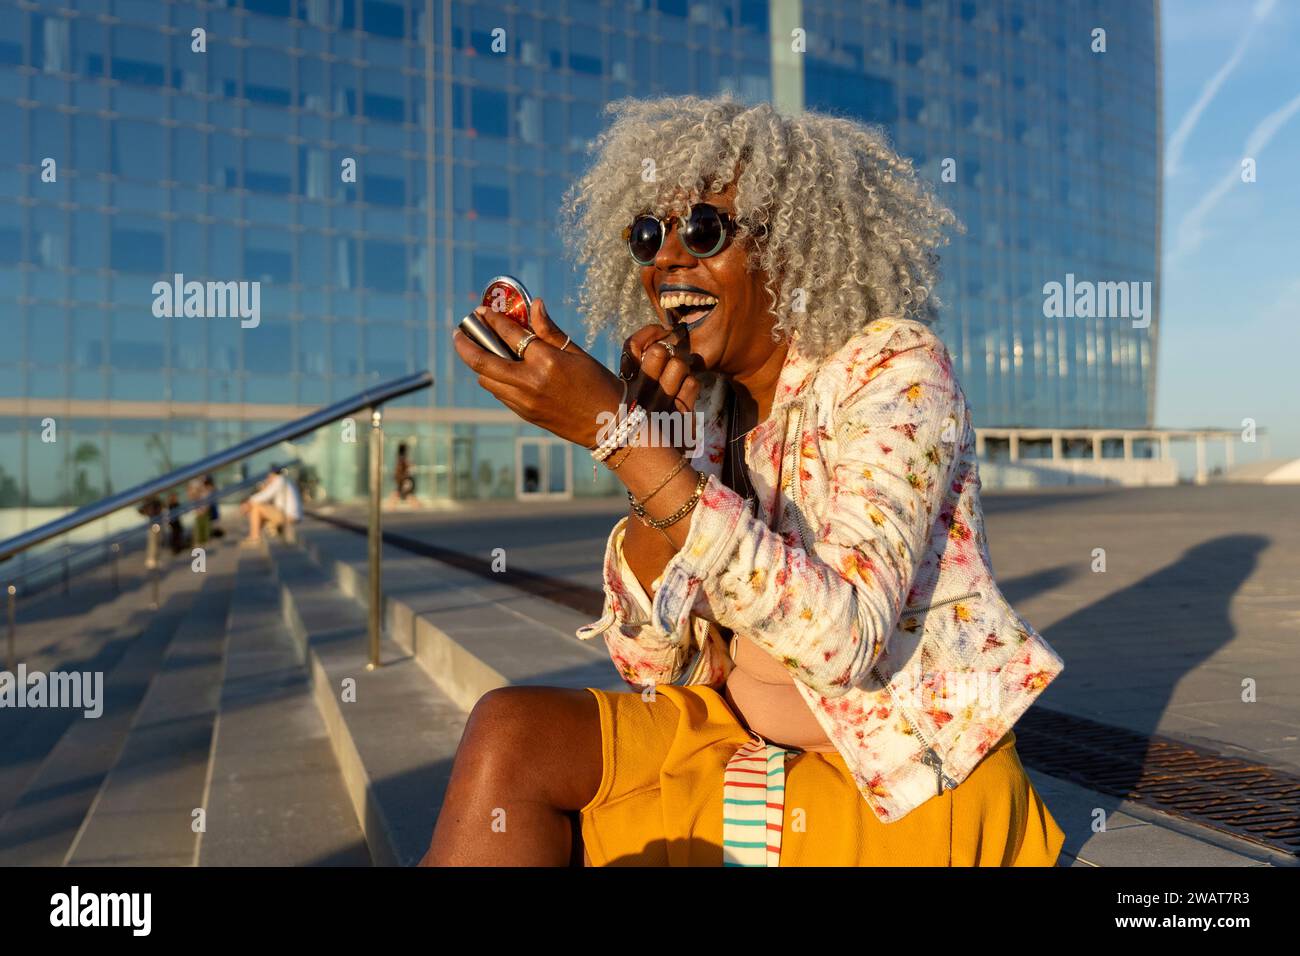 Signora nera espressiva con capelli afro e occhiali da sole che indossano rossetto blu nel soleggiato centro della città. Concetto: pro-aging, fiducia in se stessi Foto Stock